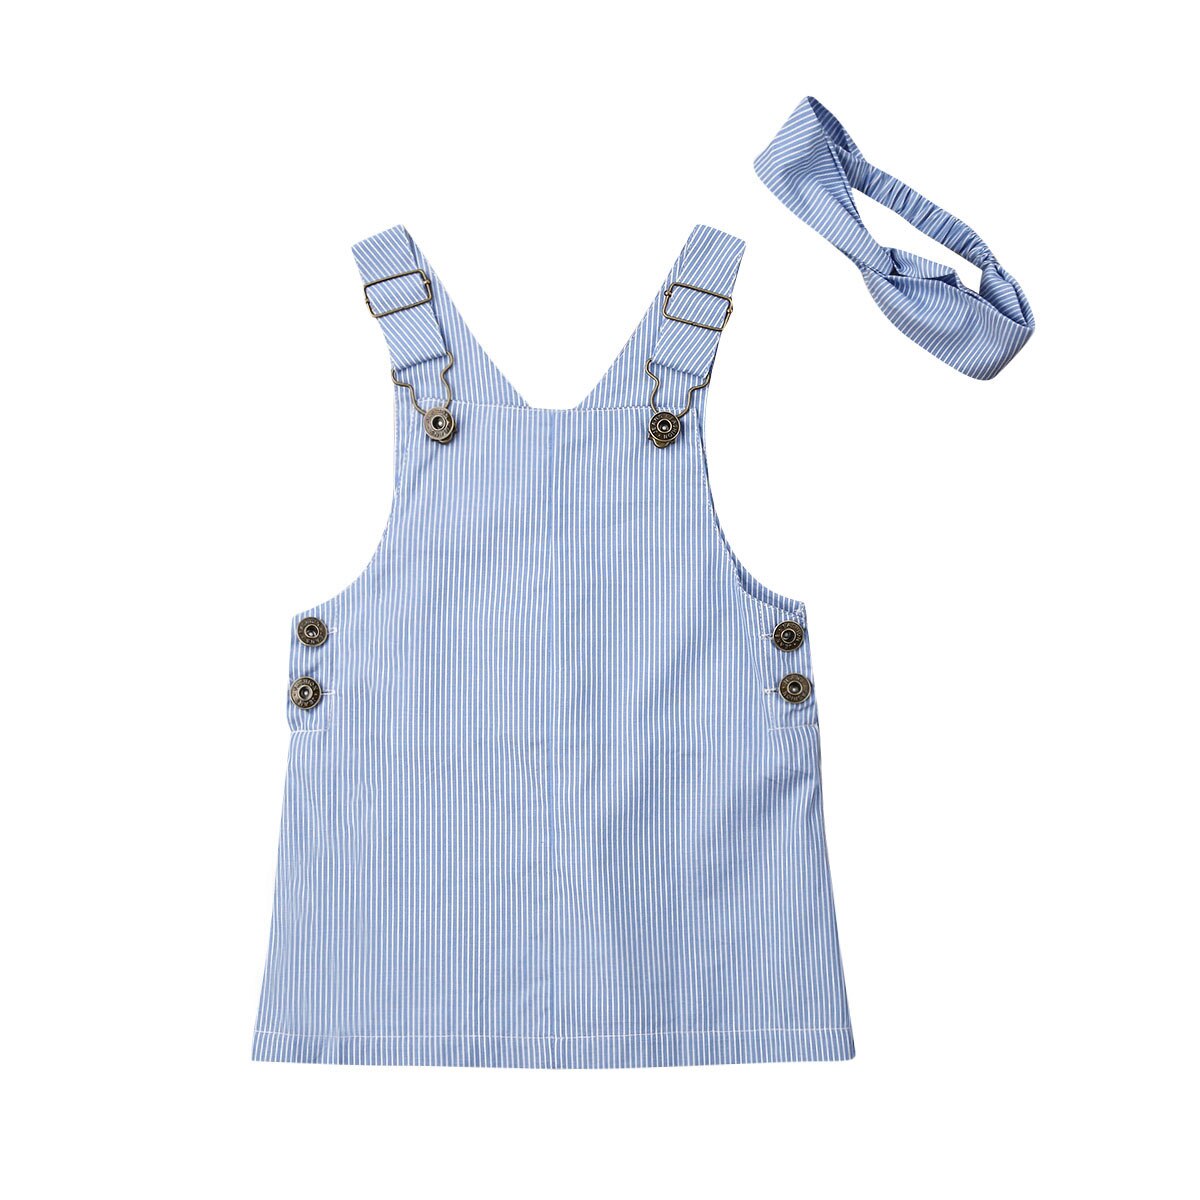 Pudcoco matchende nyfødte børn baby dreng pige tøj romper bib bukser kjole outfit sæt børn overalls: Kjole 12 måneder